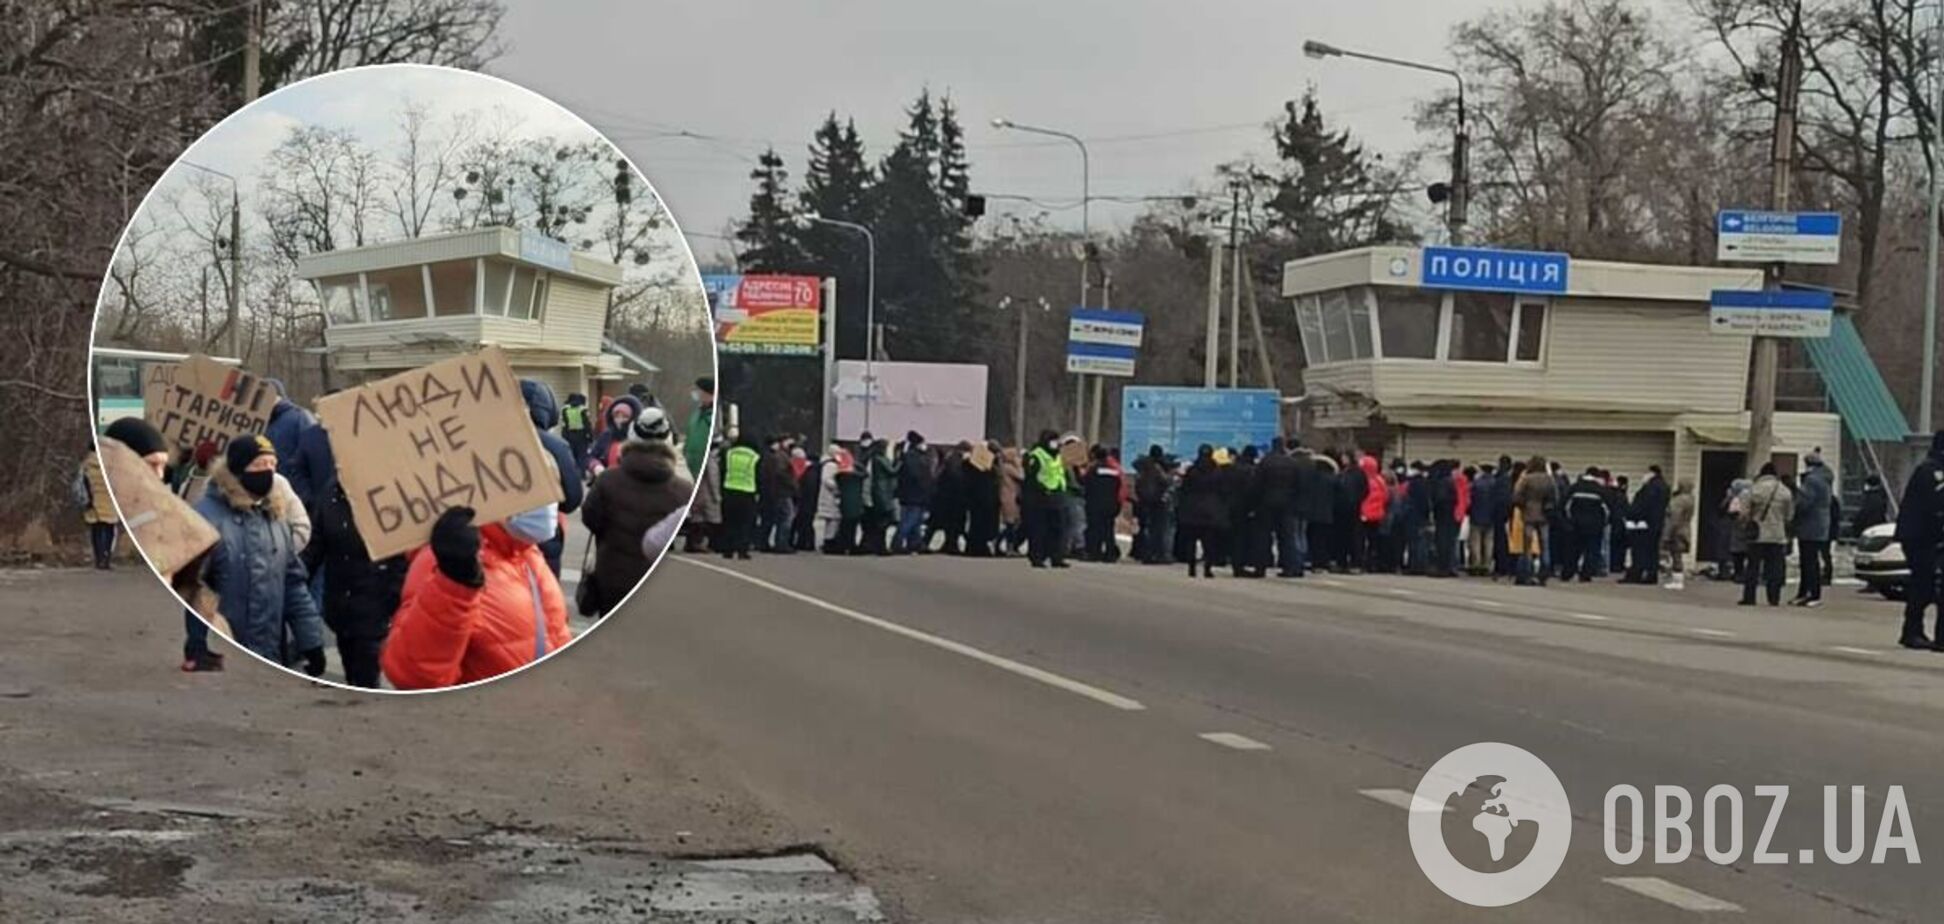 Украинцы начали массово перекрывать дороги ради снижения тарифов на газ. Фото